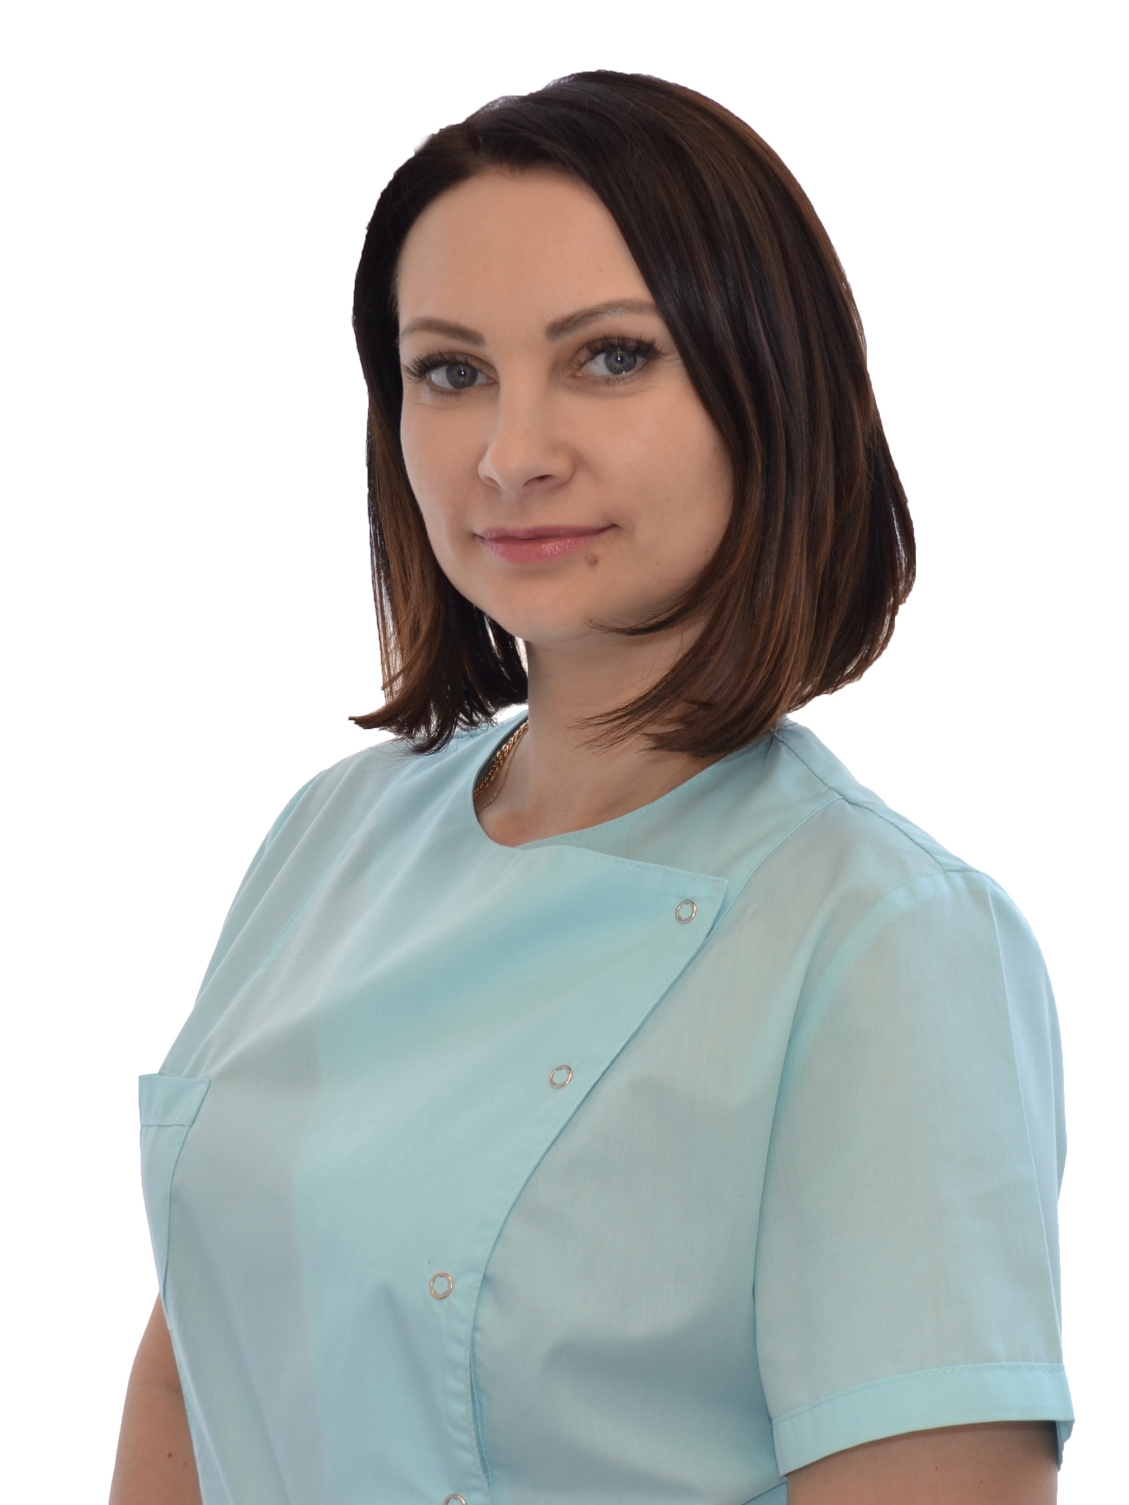 Трубицына Татьяна Борисовна - стоматологическая клиника L70